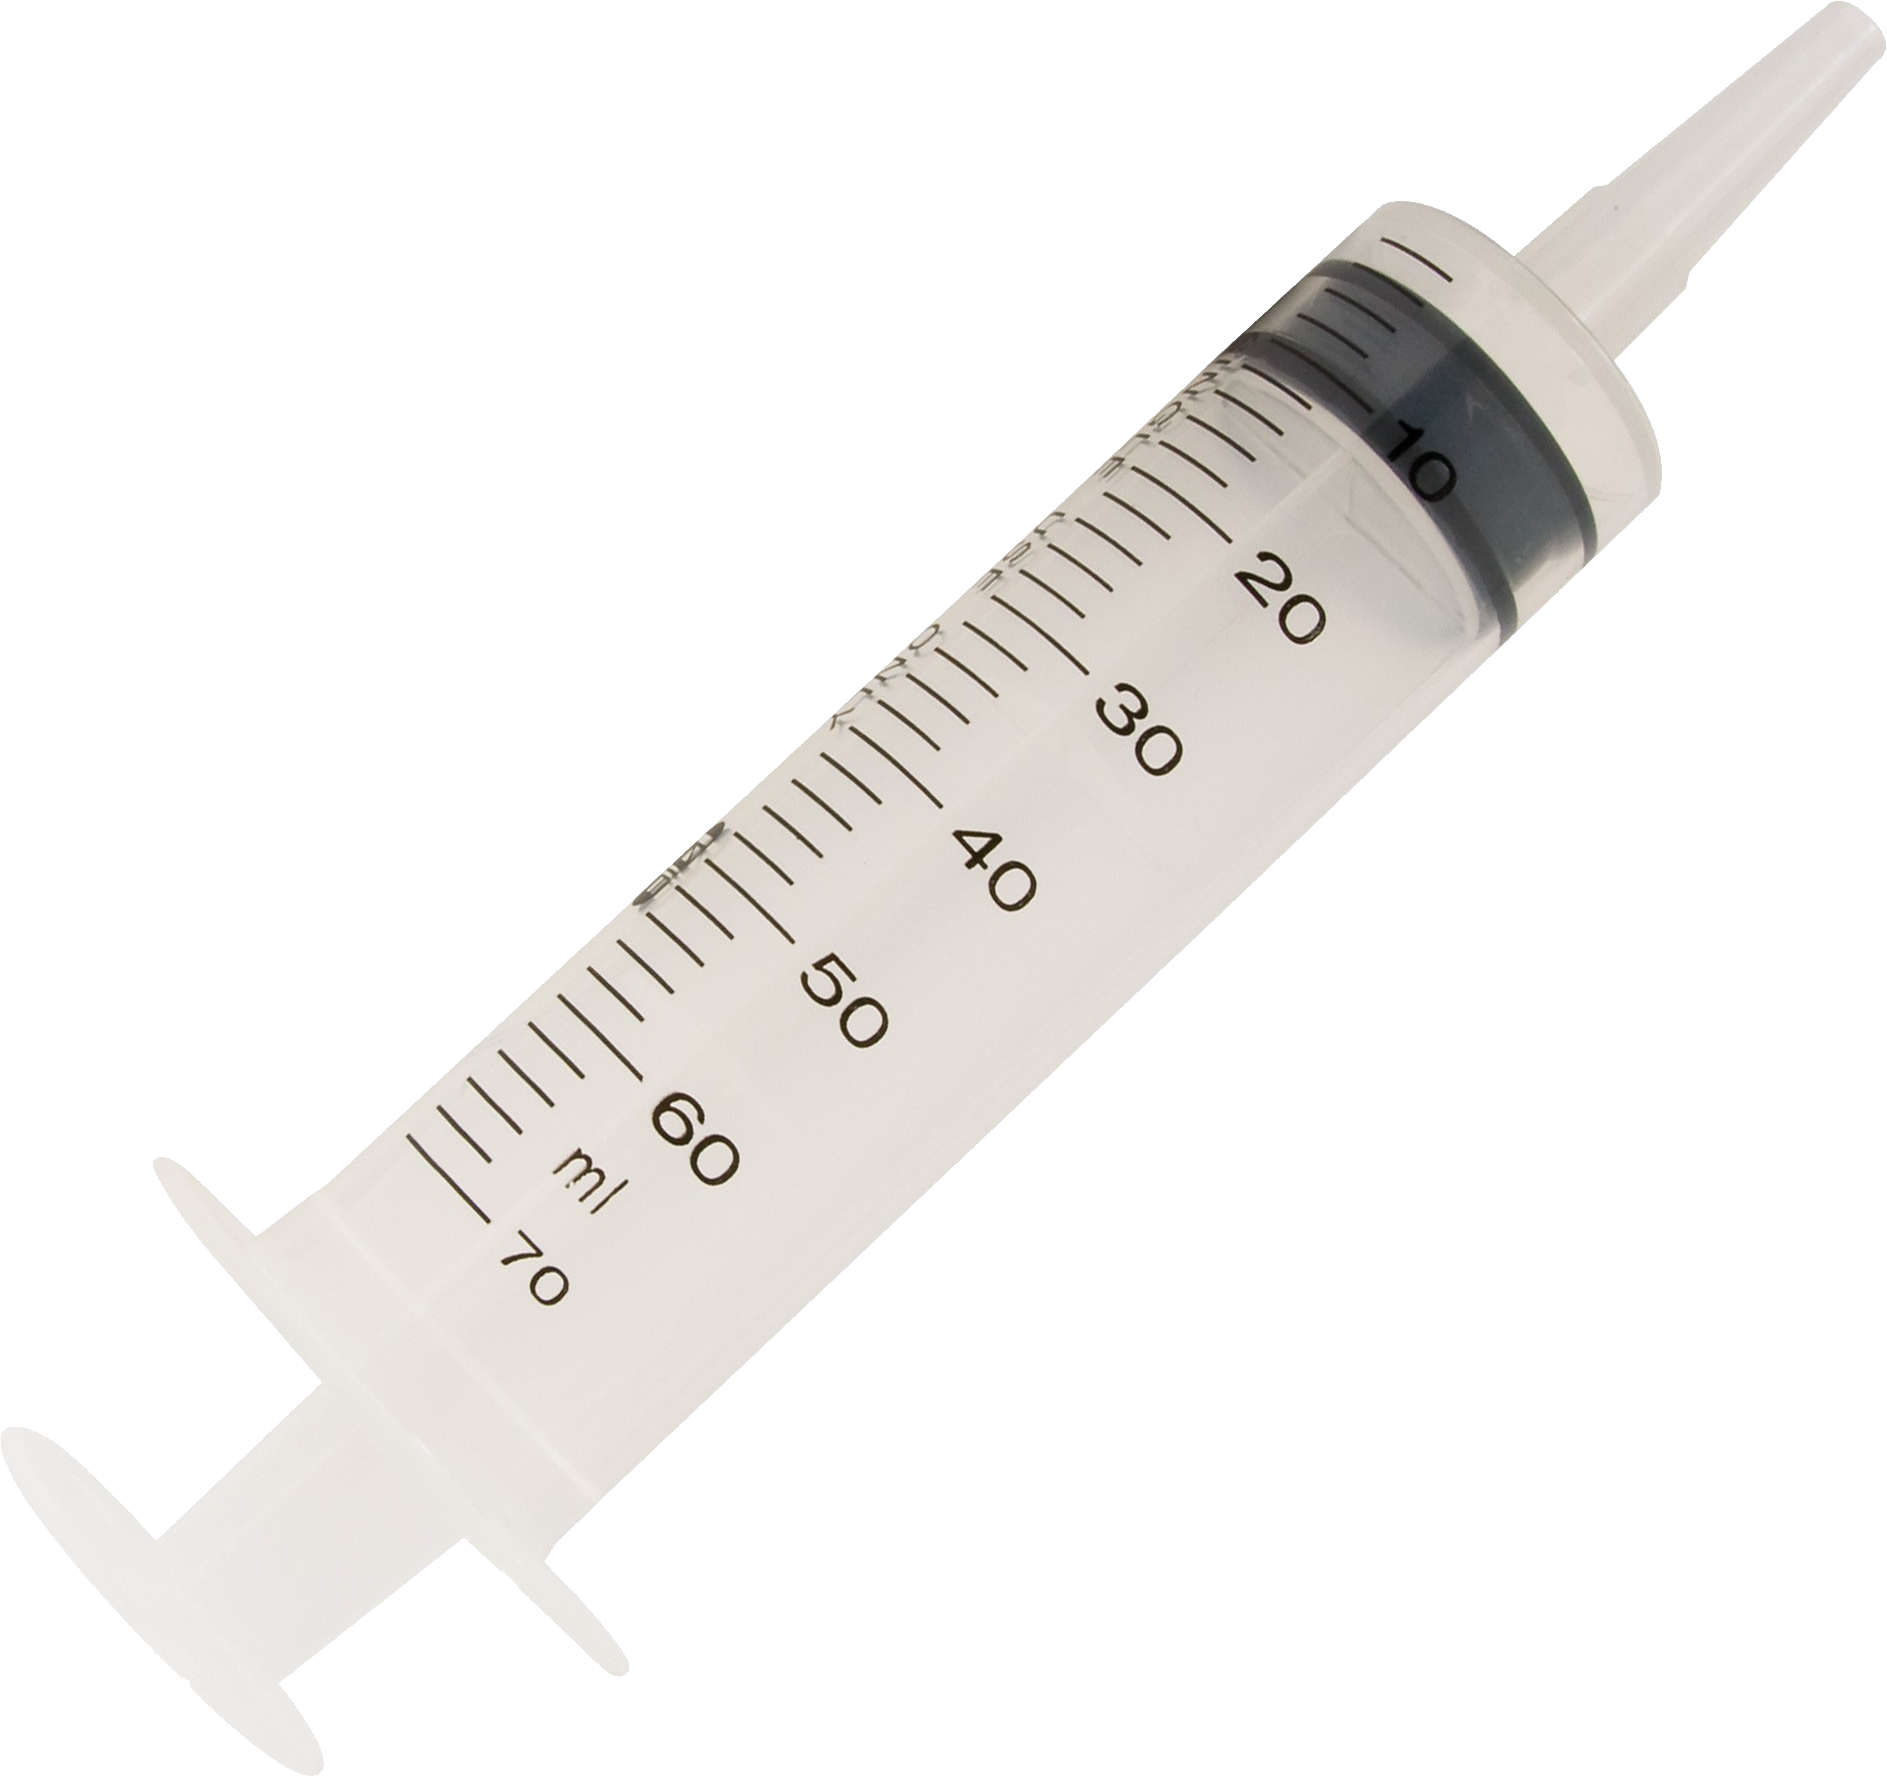 Syringe Transparent Png Picpng